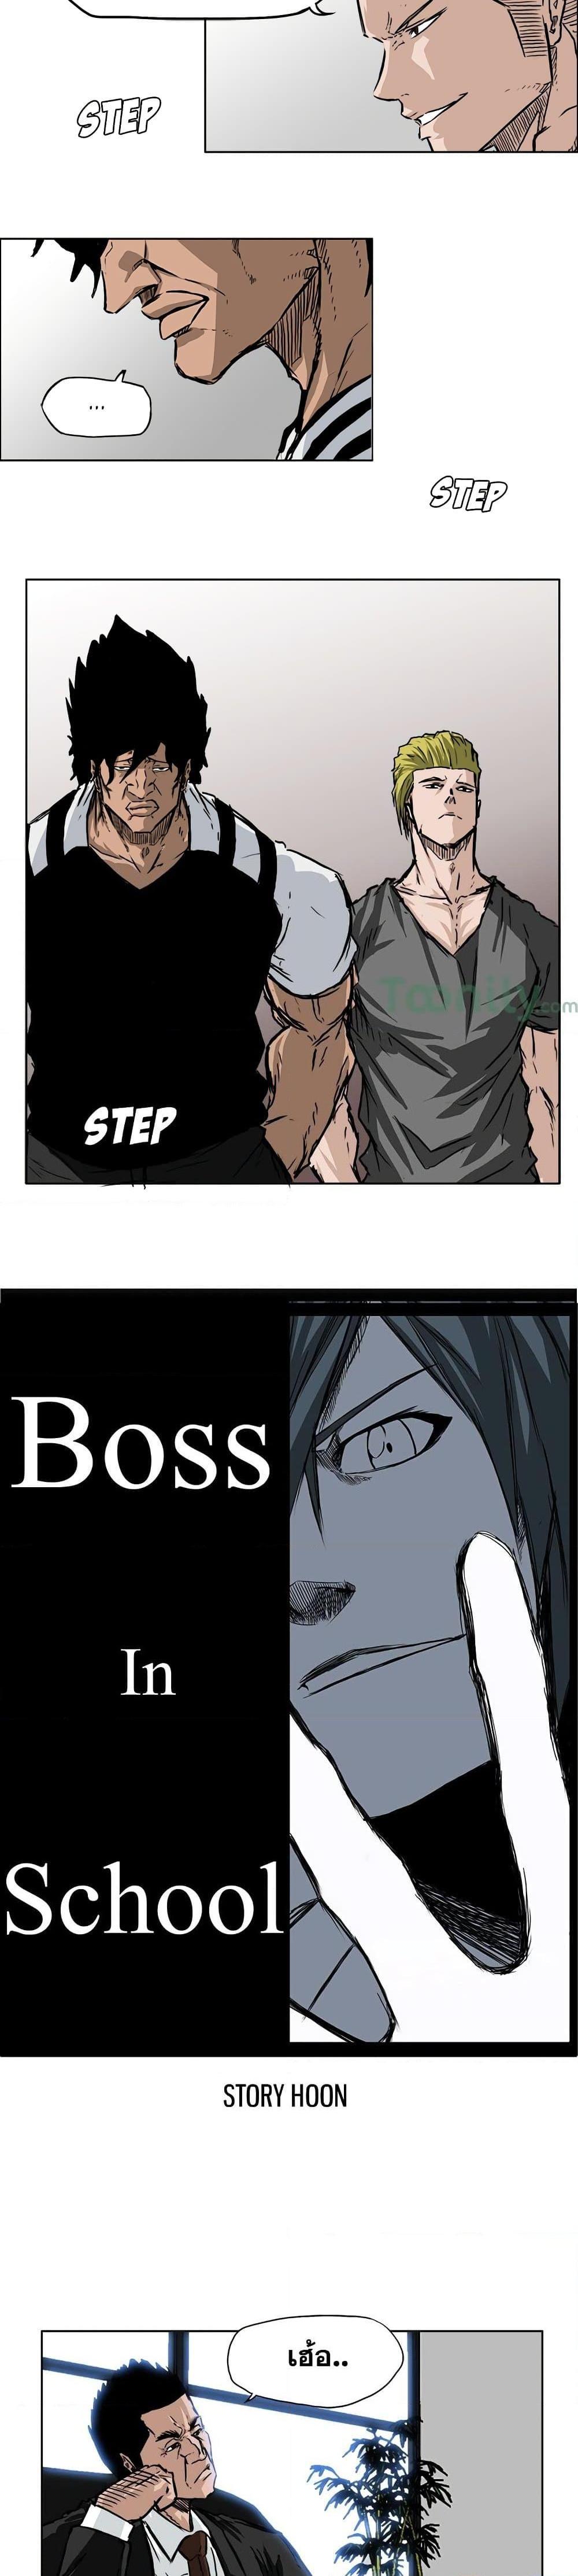 Boss in School 52 05